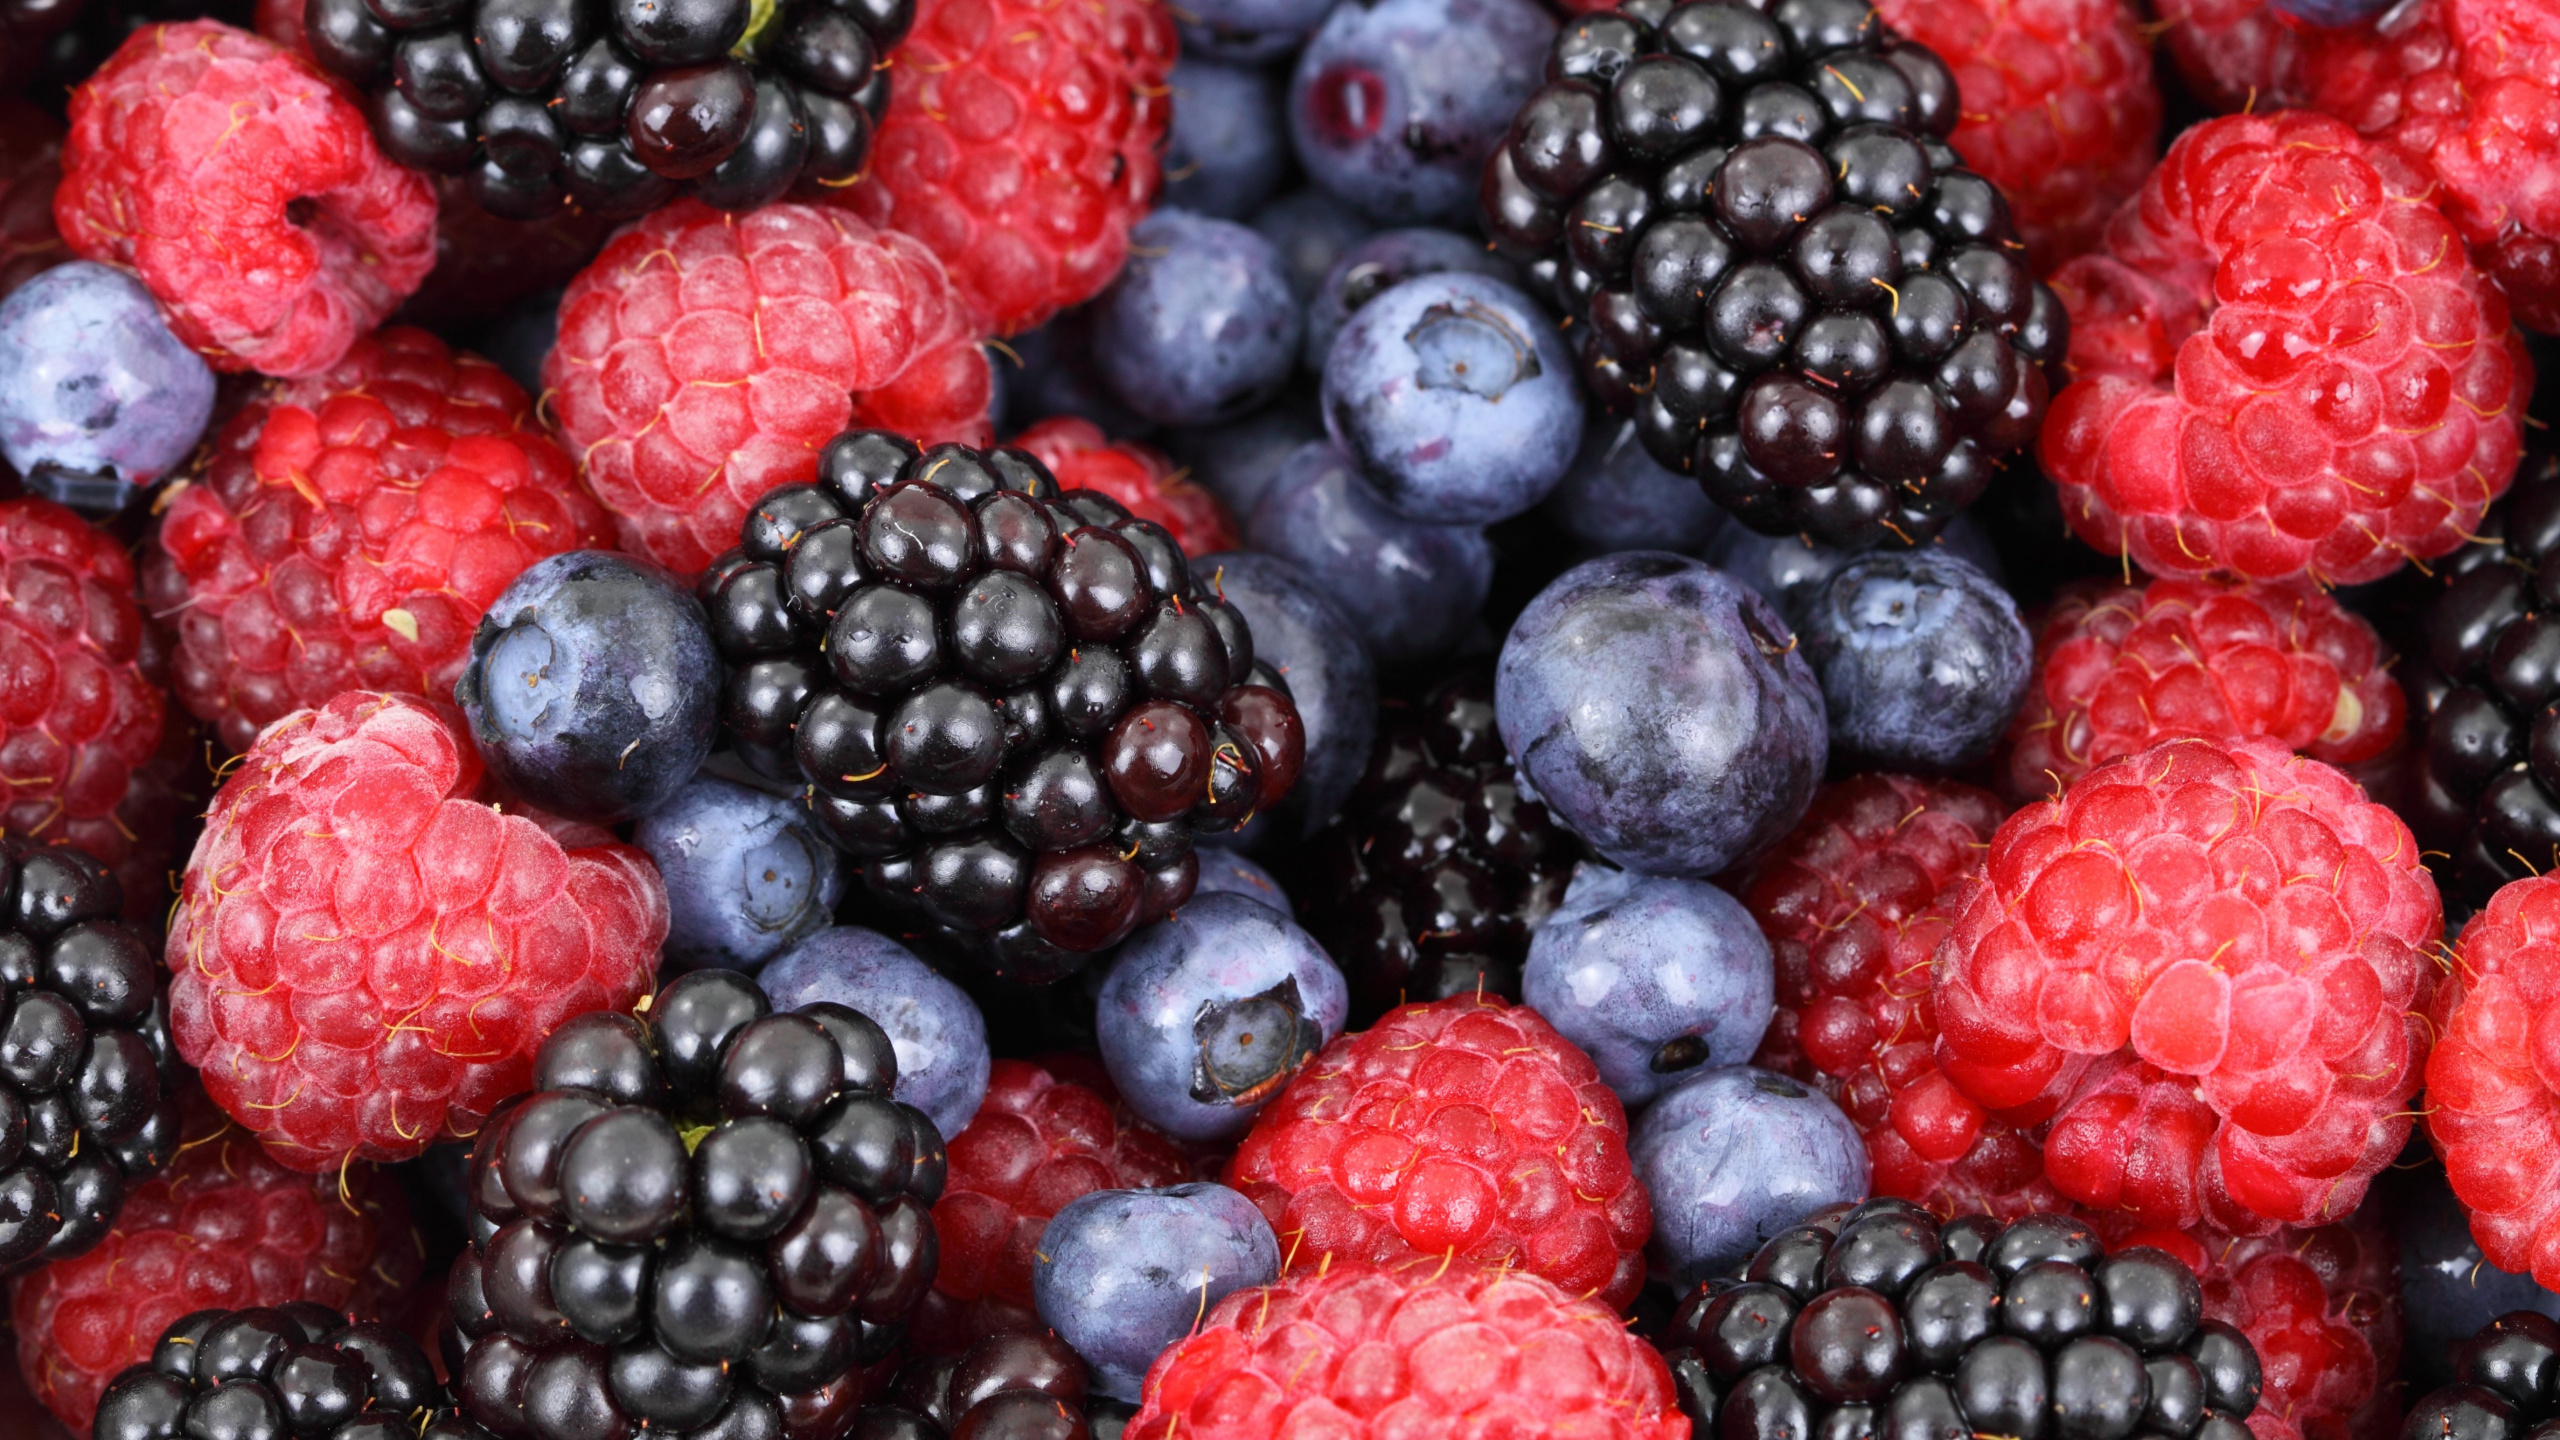 树莓, 天然的食物, 食品, 浆果, 杂货店 壁纸 2560x1440 允许